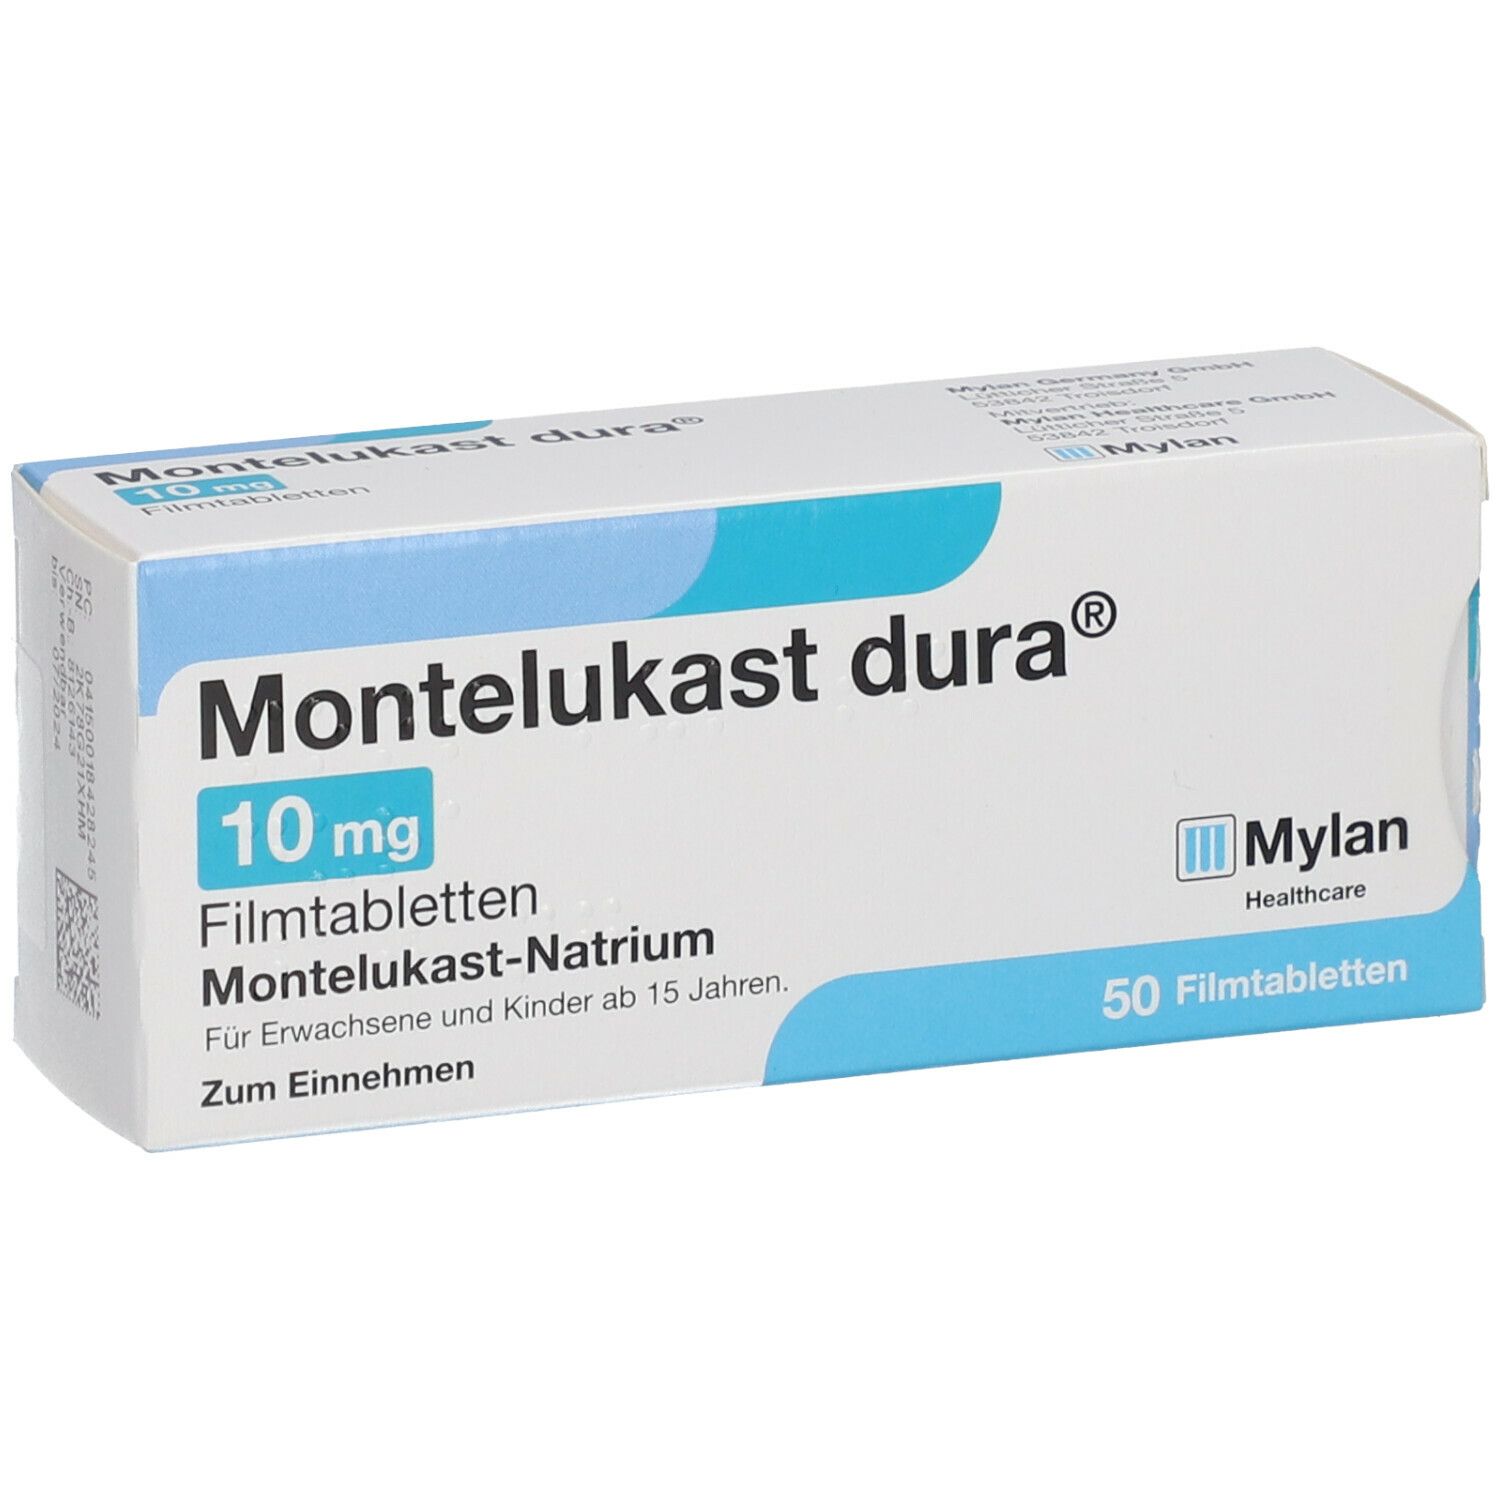 Montelukast dura® 10 mg